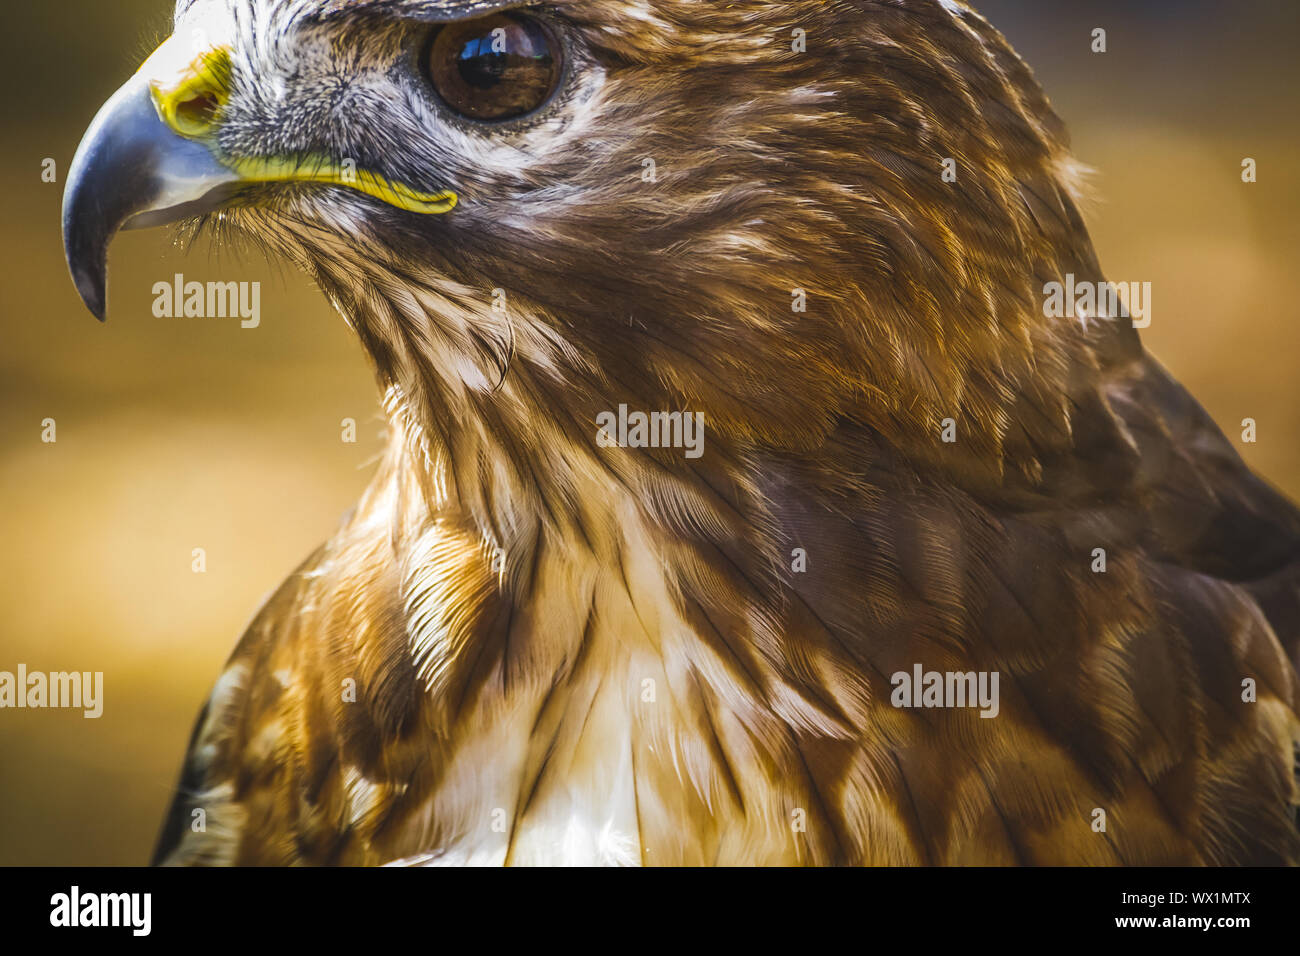 Adler, tagaktive Raubvogel mit schönen Gefieder und gelben Schnabel Stockfoto